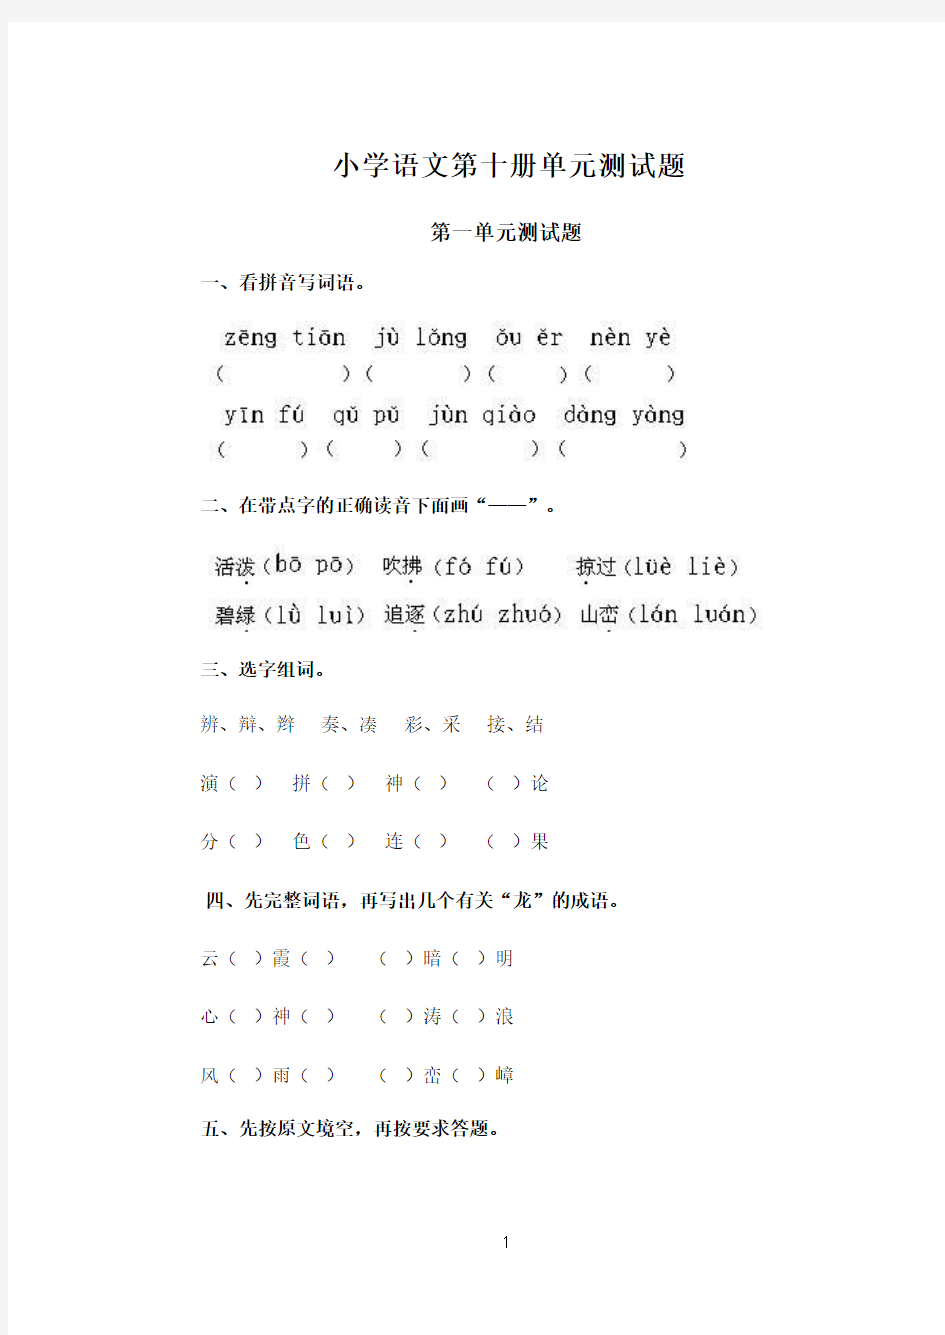 人教版小学语文第十册单元测试题(全册)2013